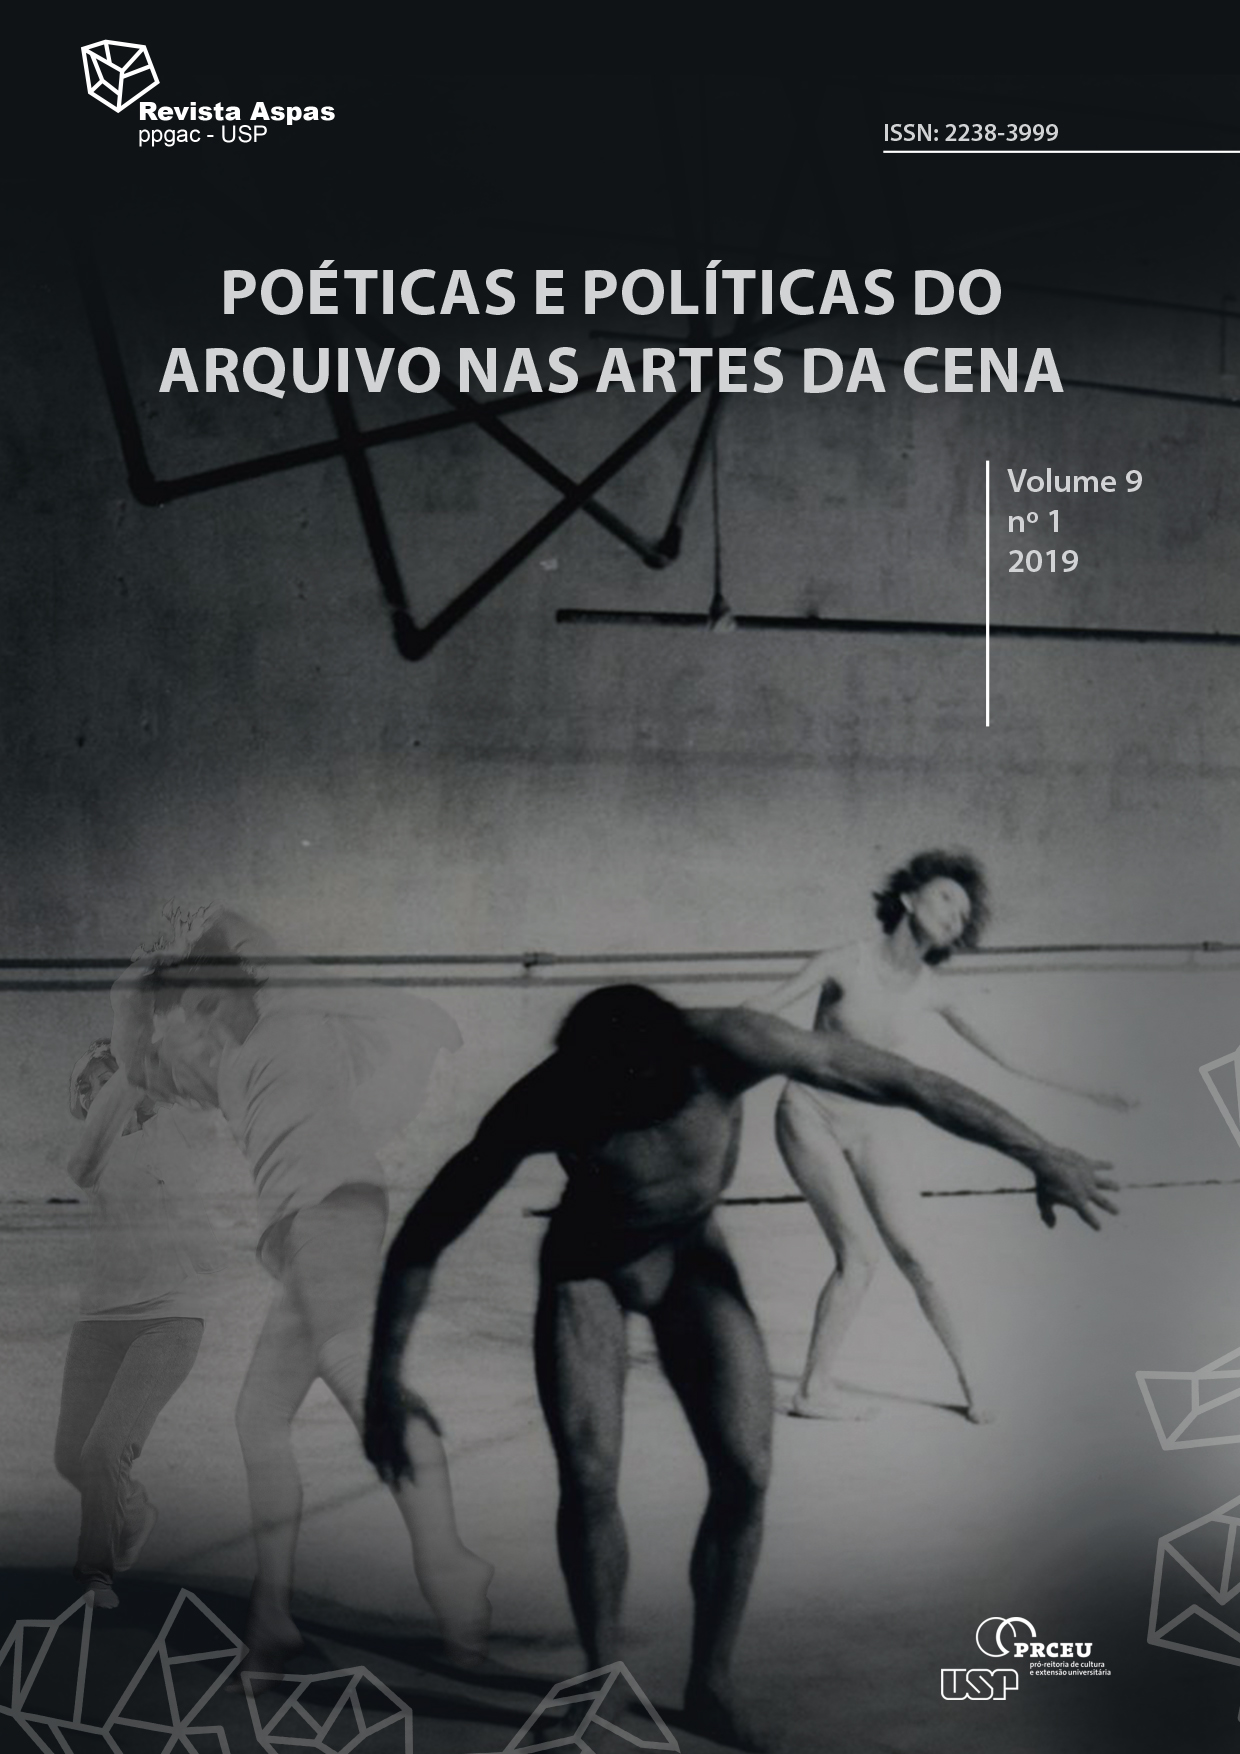 					View Vol. 9 No. 1 (2019): Poéticas e políticas do arquivo nas artes da cena
				